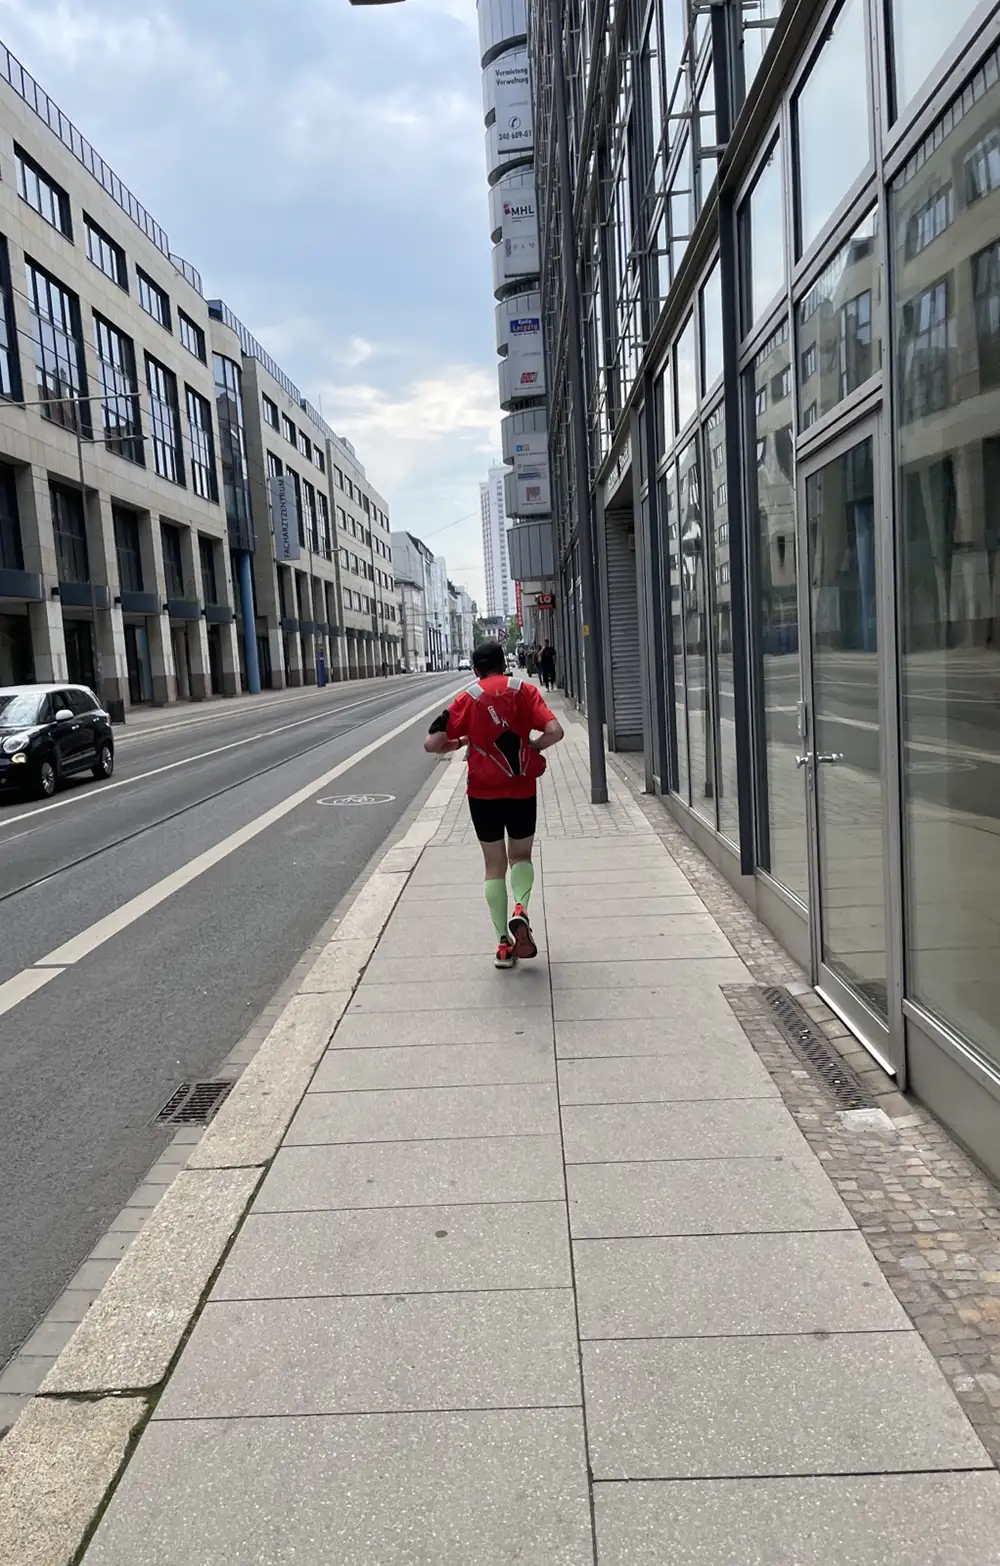 Läufer auf einem einsamen schmalen Fußweg zwischen Bürogebäuden